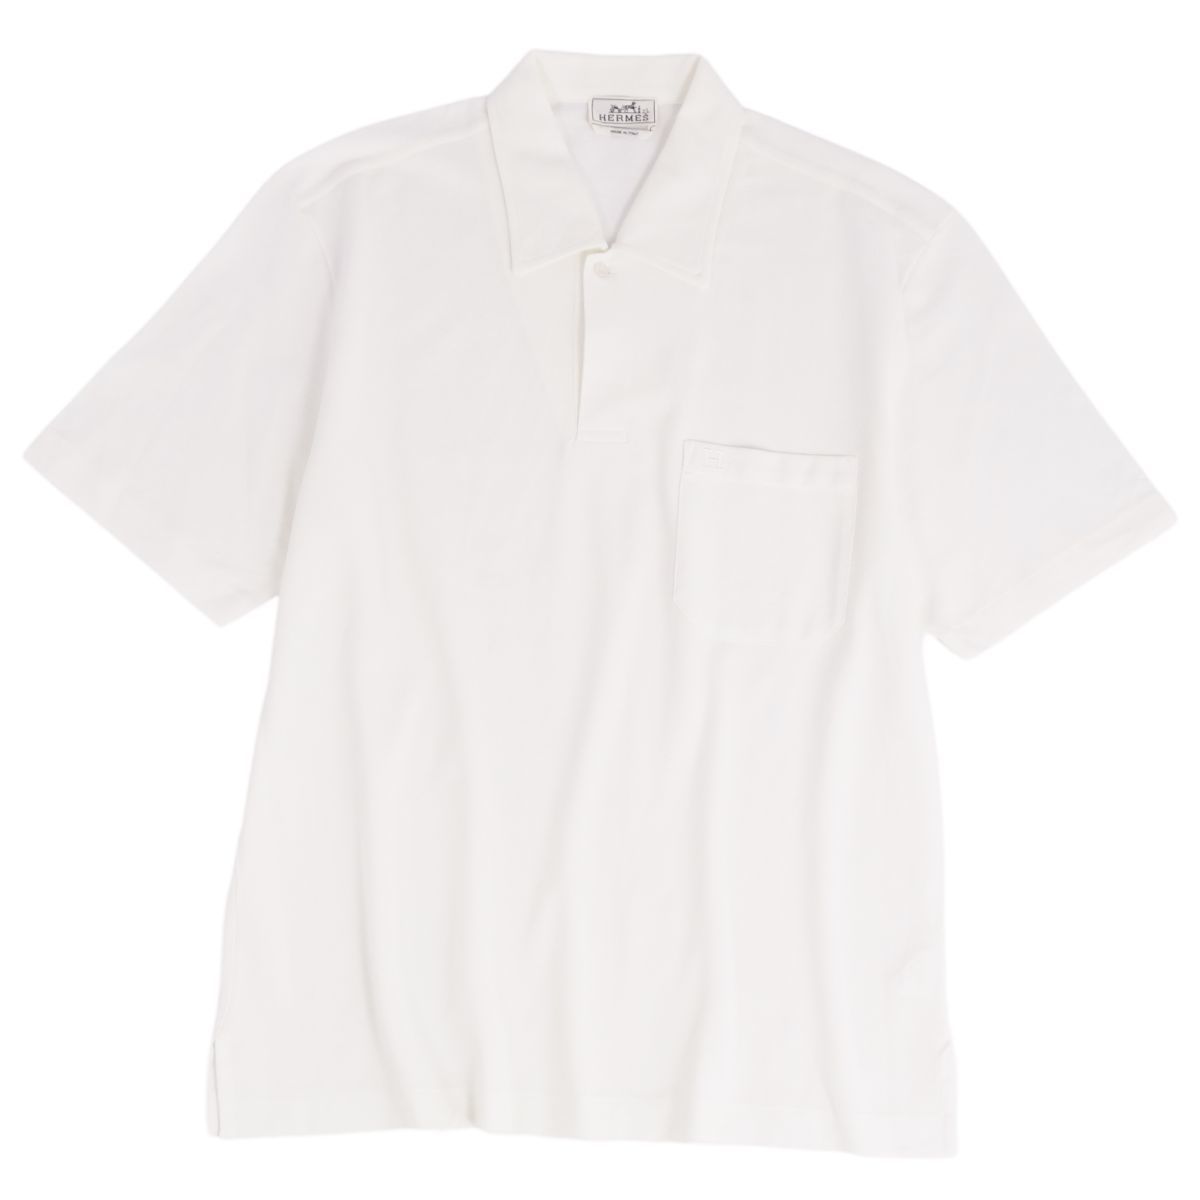 売上実績NO.1 メンズ トップス 鹿の子 Hロゴ刺繍 ショートスリーブ 半袖 ポロシャツ シャツ HERMES エルメス XL cg09me-rm04f05904 ホワイト 半袖シャツ